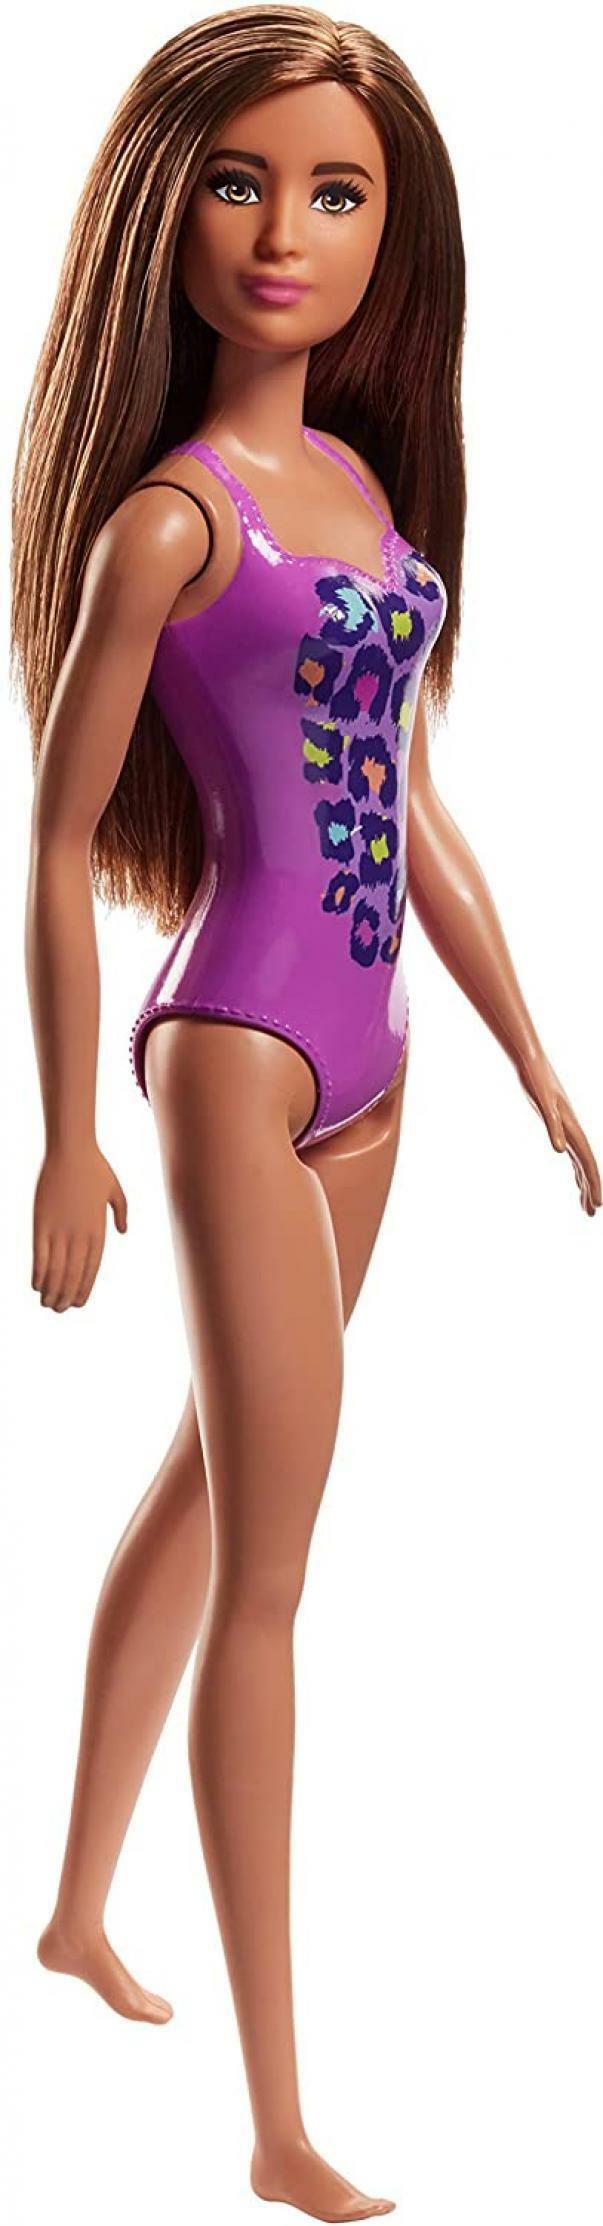 mattel mattel barbie- beach con costume-perfetta per l'estate, colore viola, fjd98